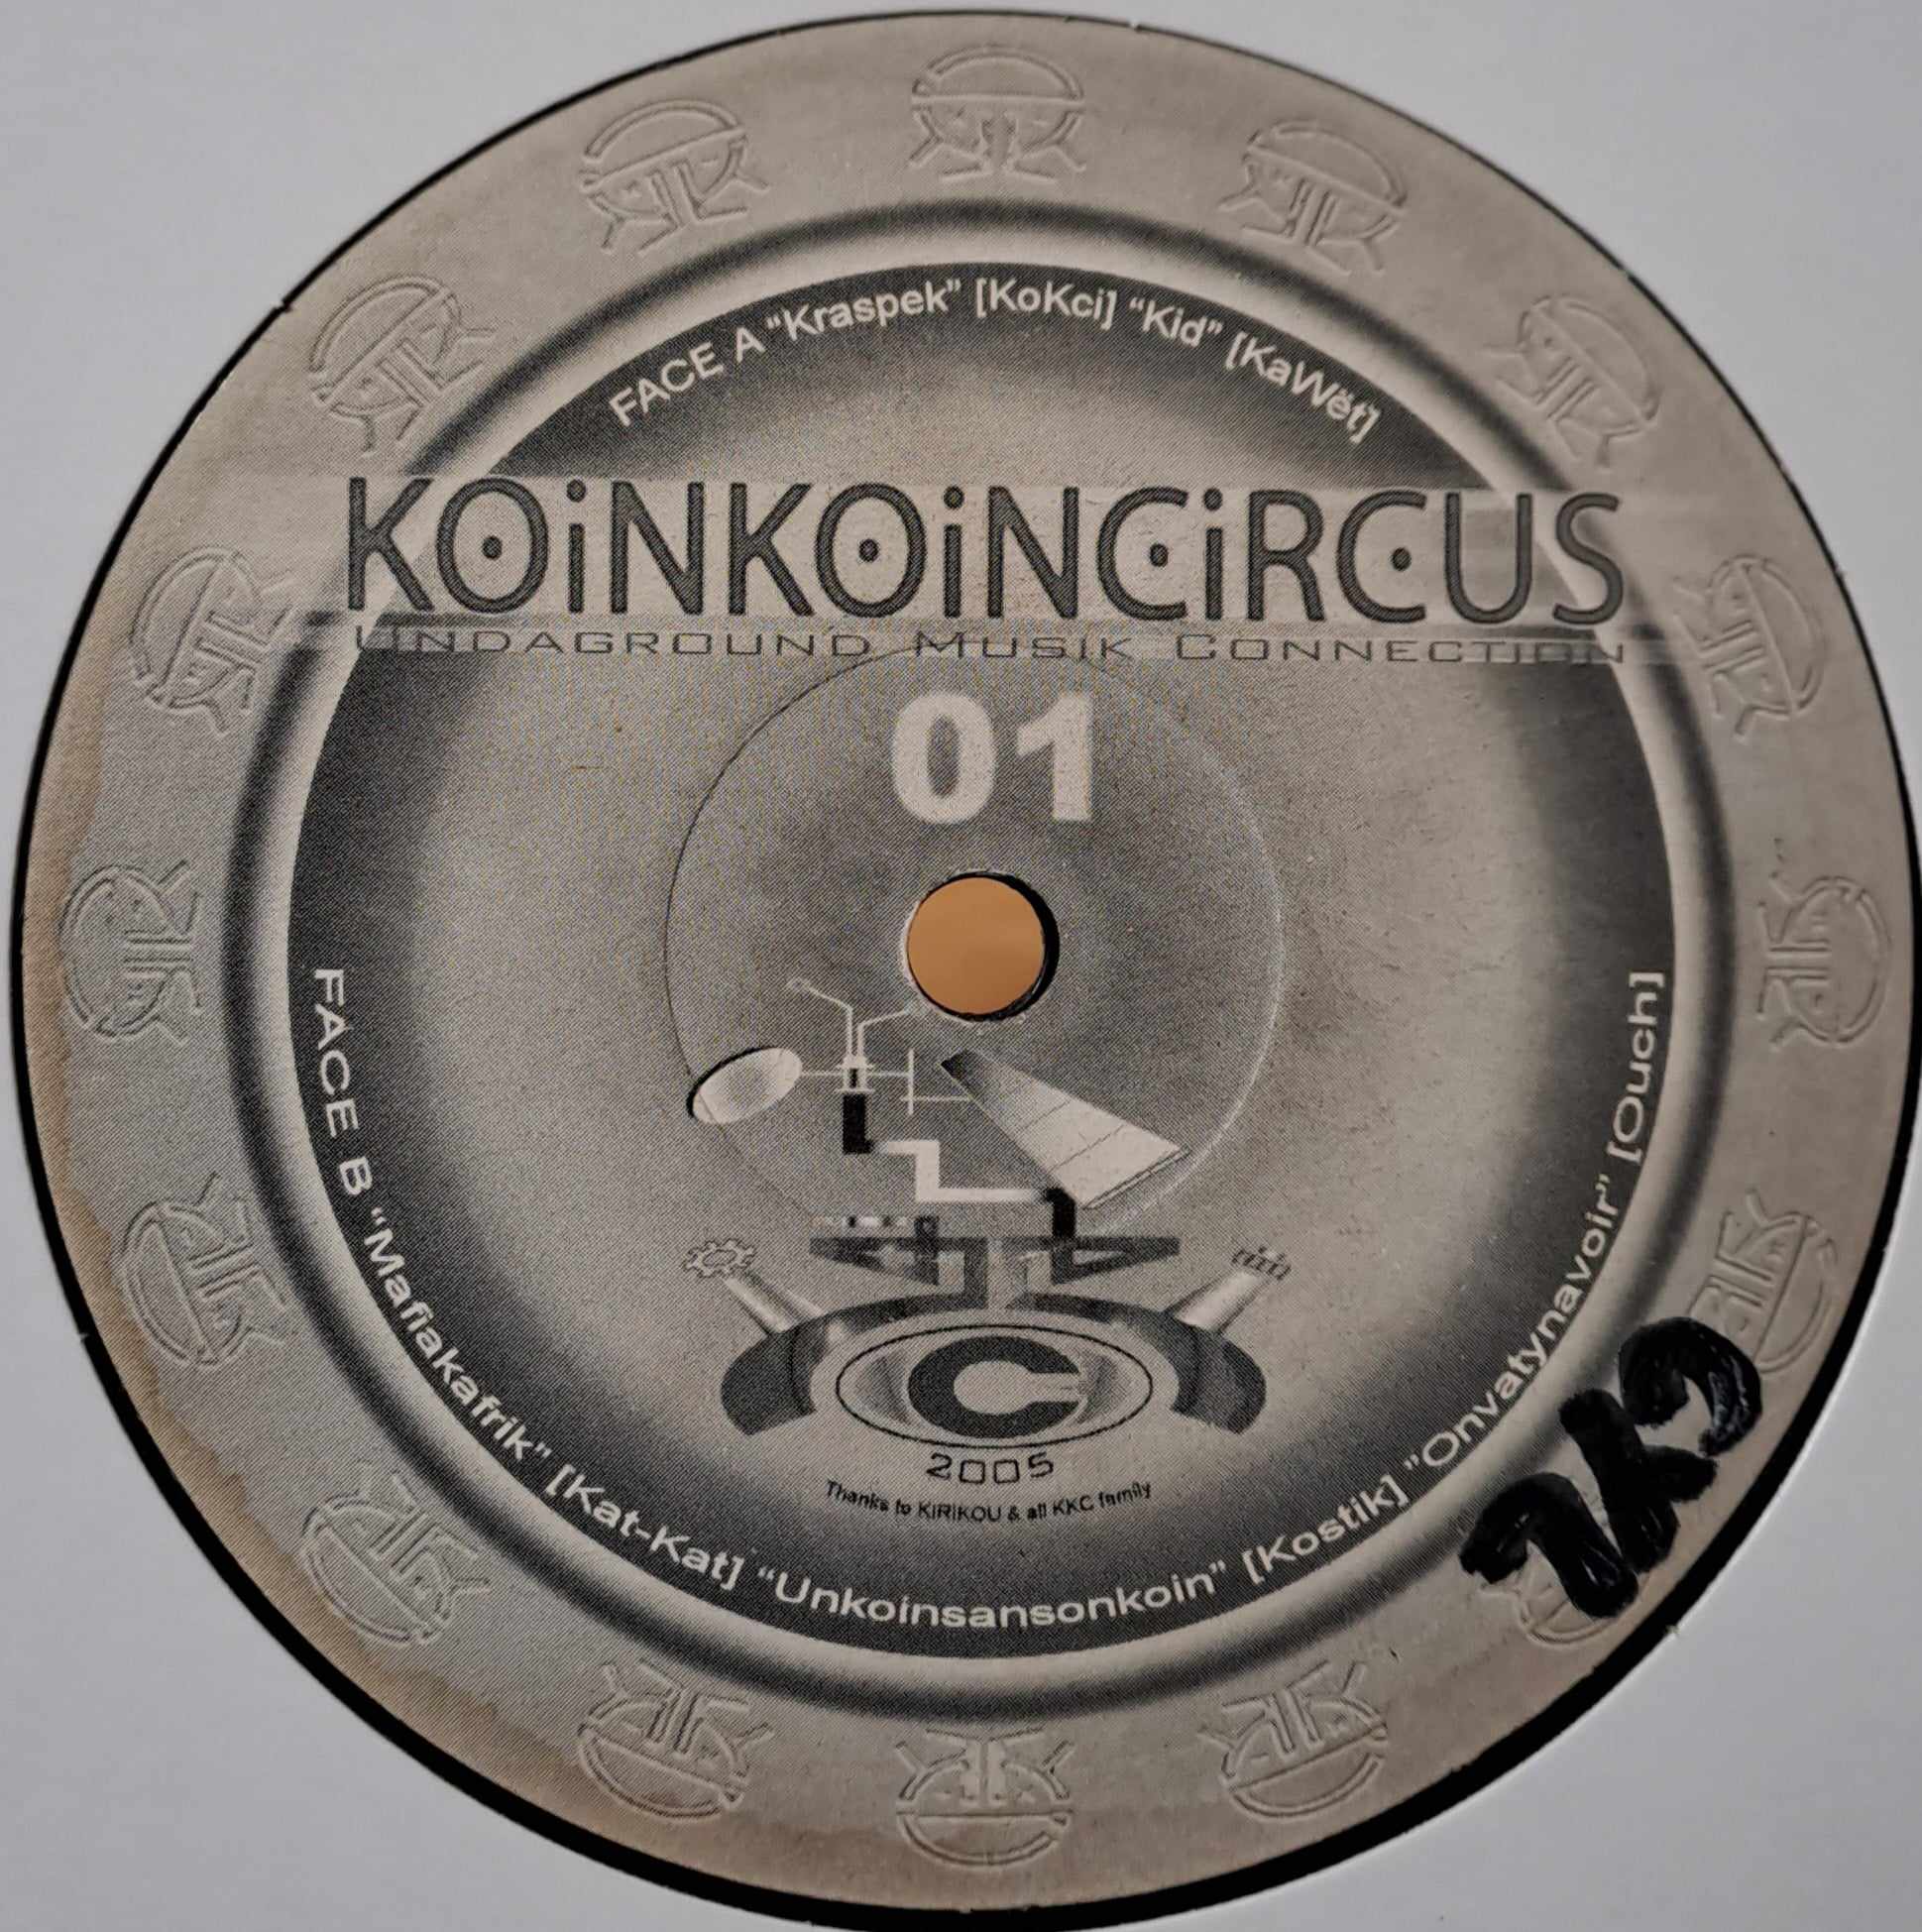 Koin Koin Circus 01 - vinyle freetekno